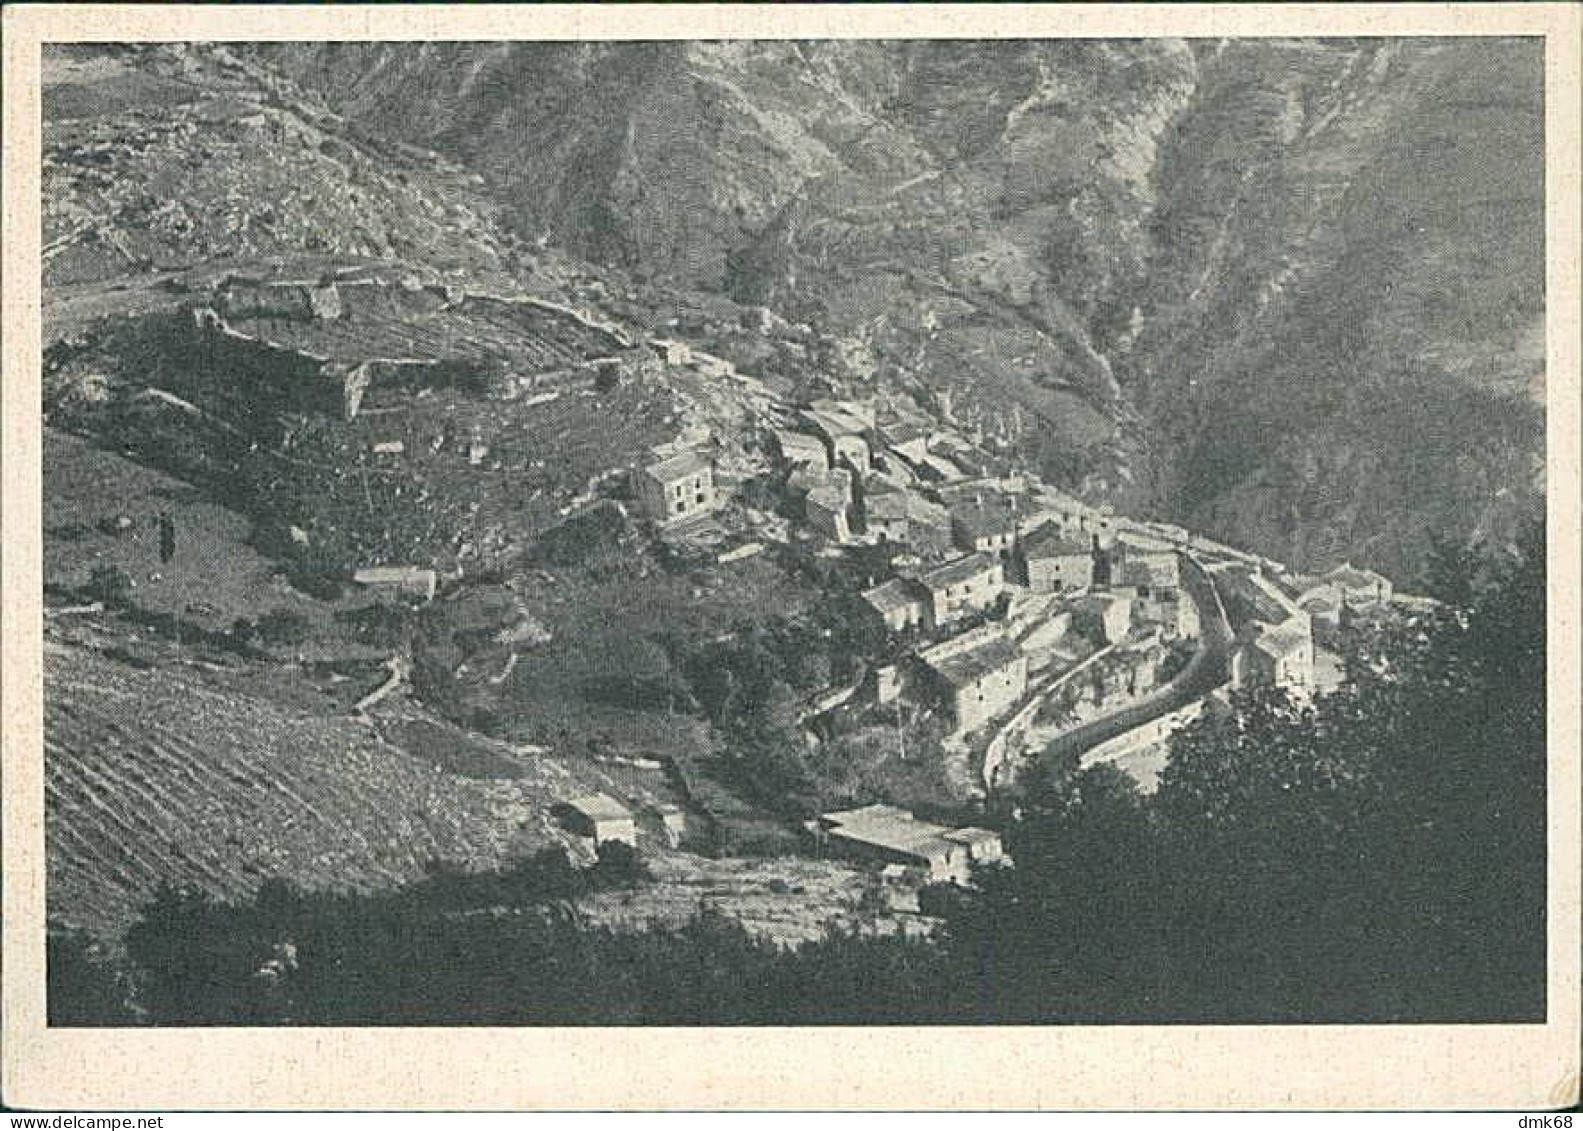 COLLI MONTE BOVE ( L'AQUILA ) PANORAMA - EDIZIONE SESTILLO - 1950s (20688) - L'Aquila